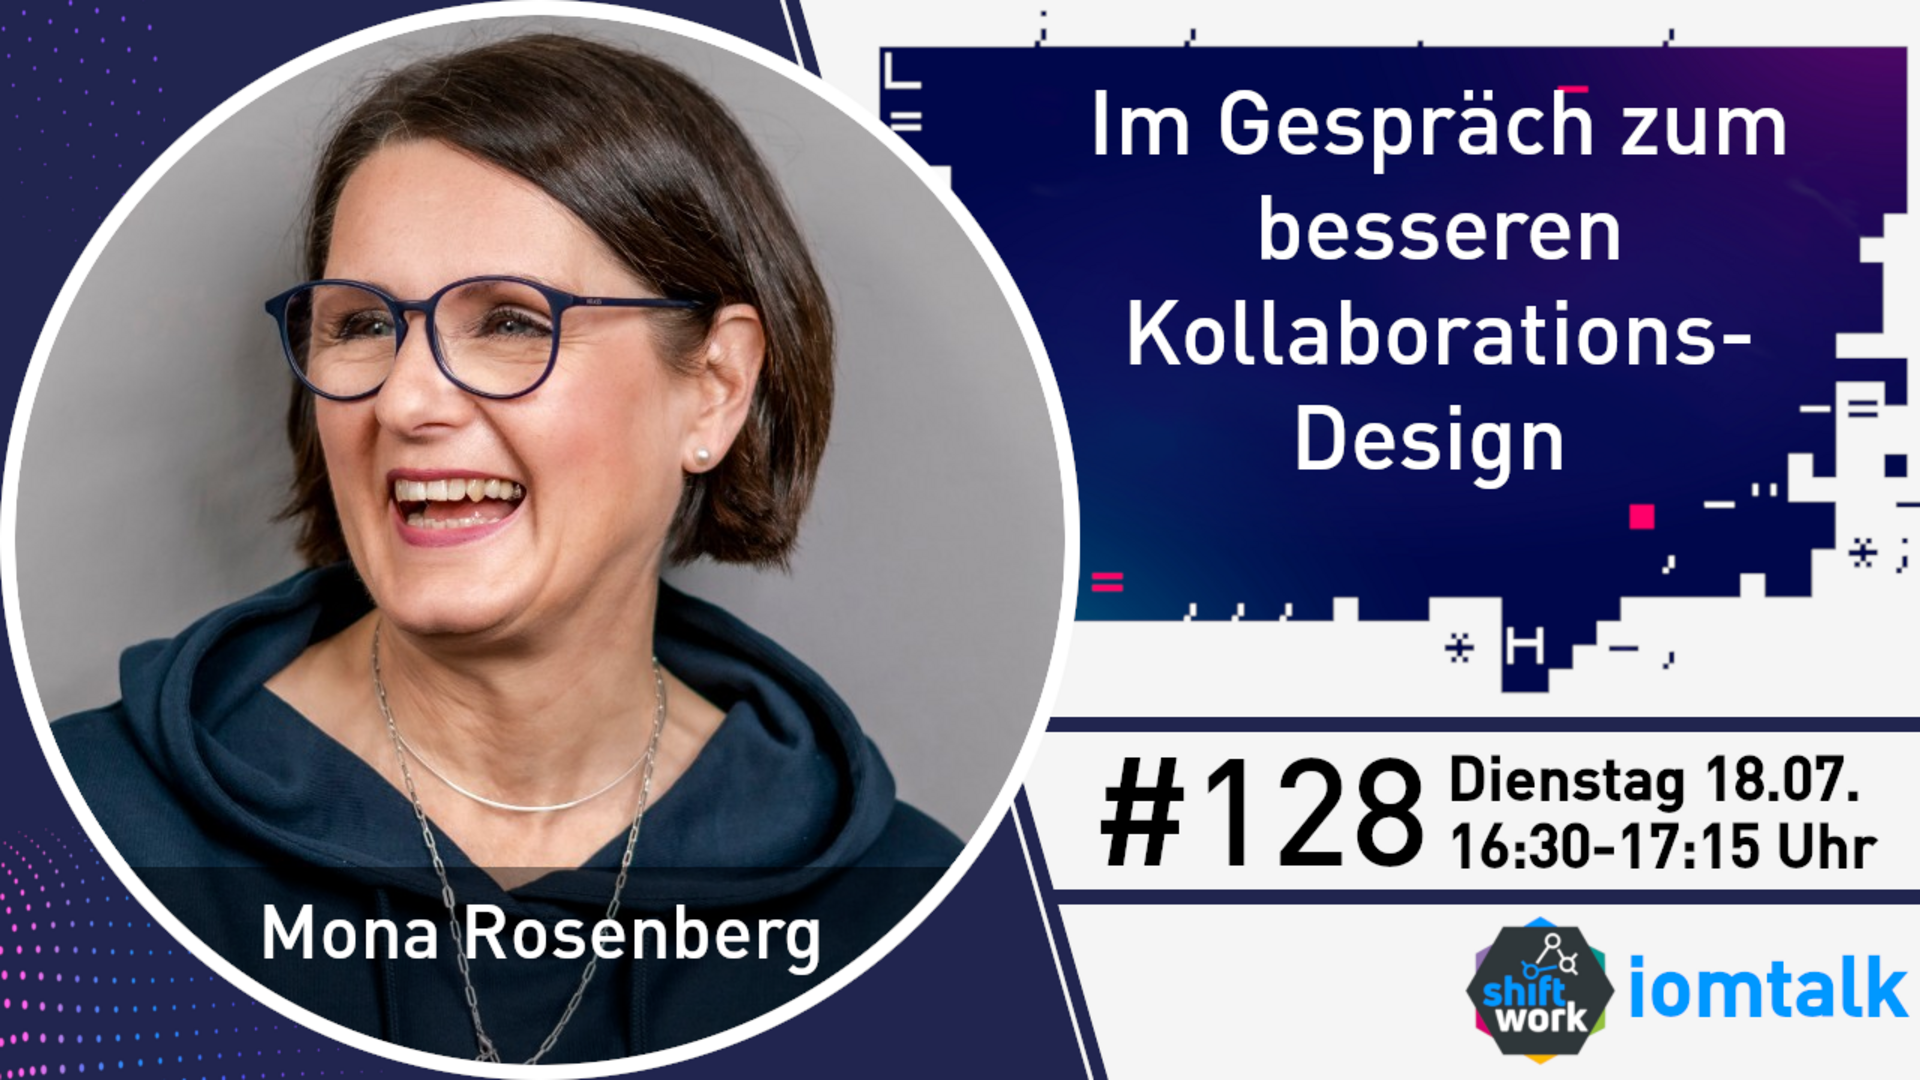 Im Gespräch mit Mona Rosenberg zum besseren Kollaborations-Design